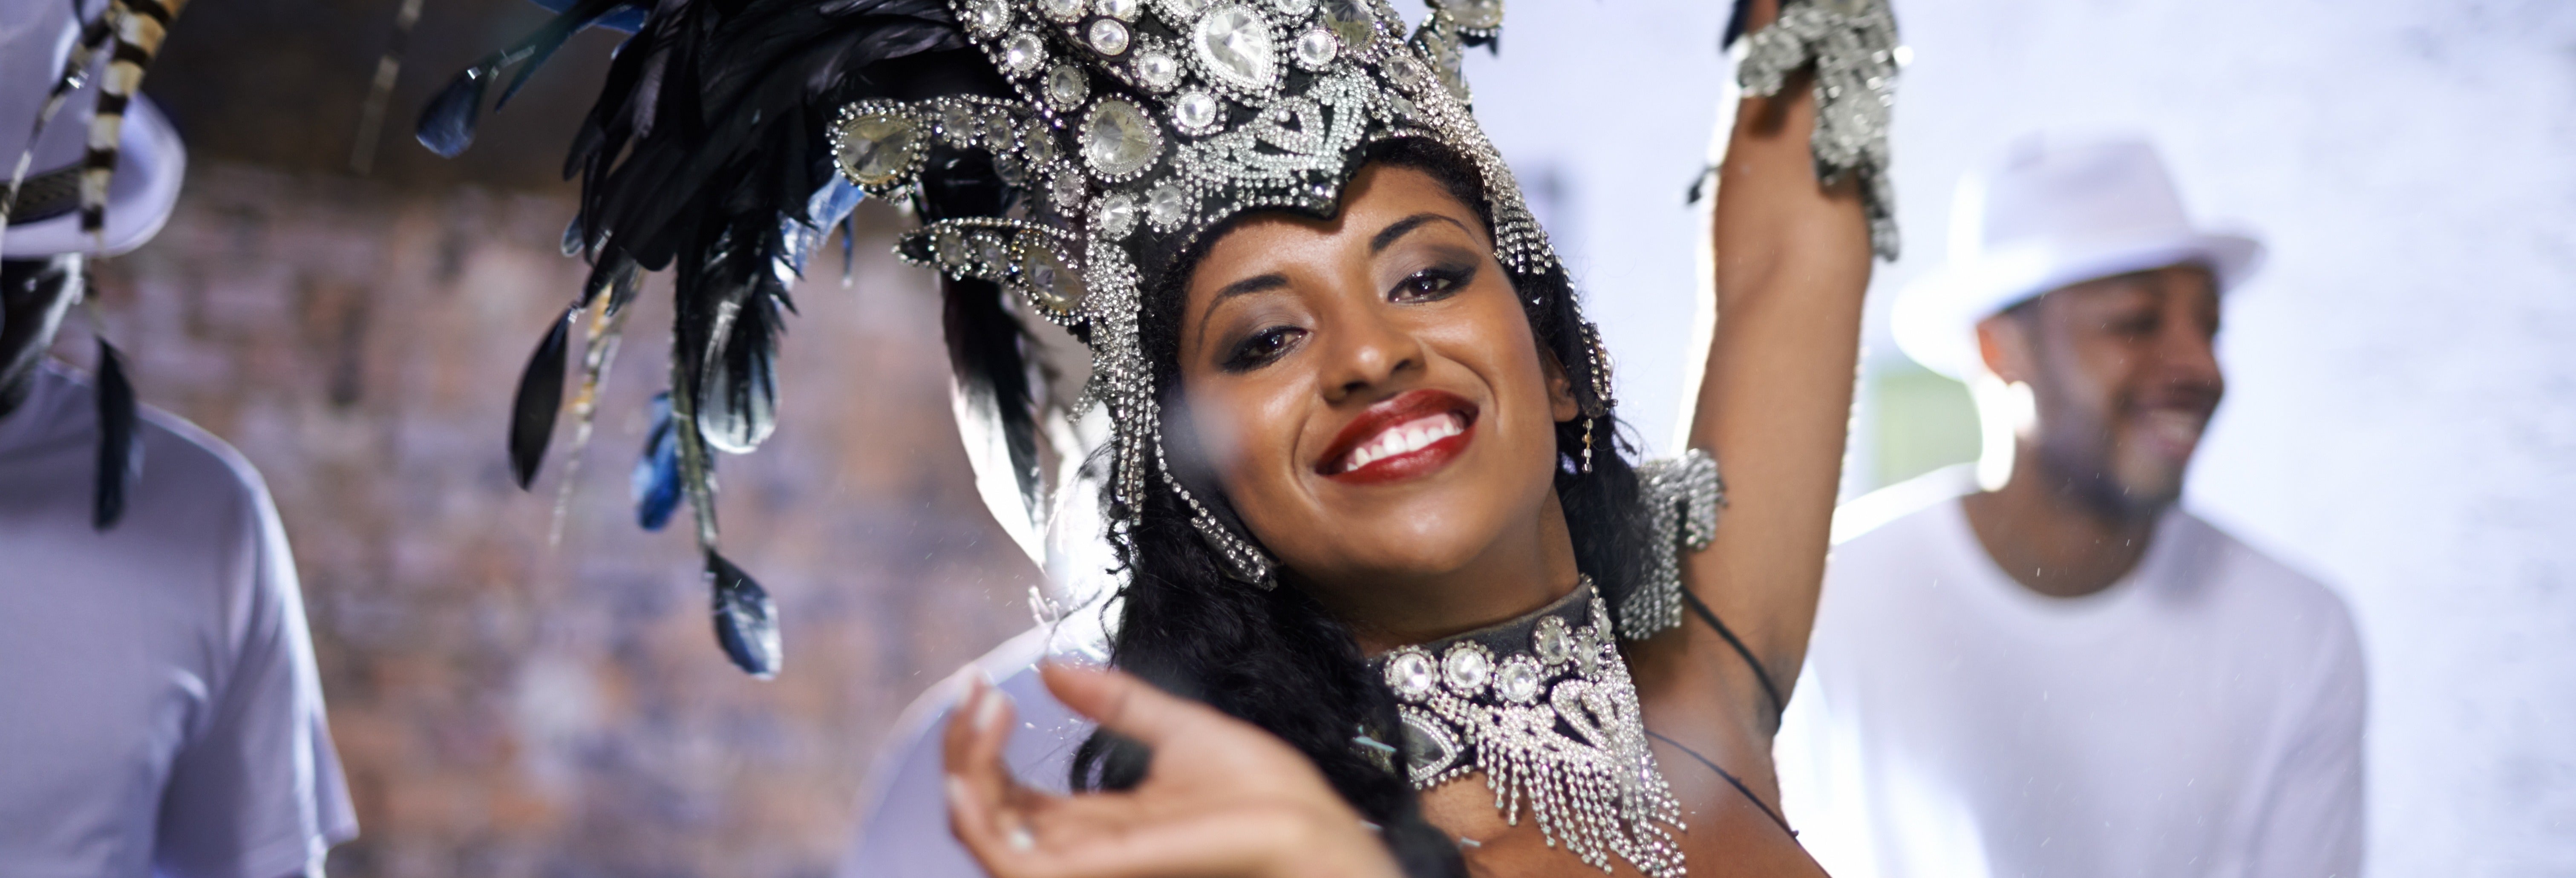 Desfile de carnaval no Rio de Janeiro